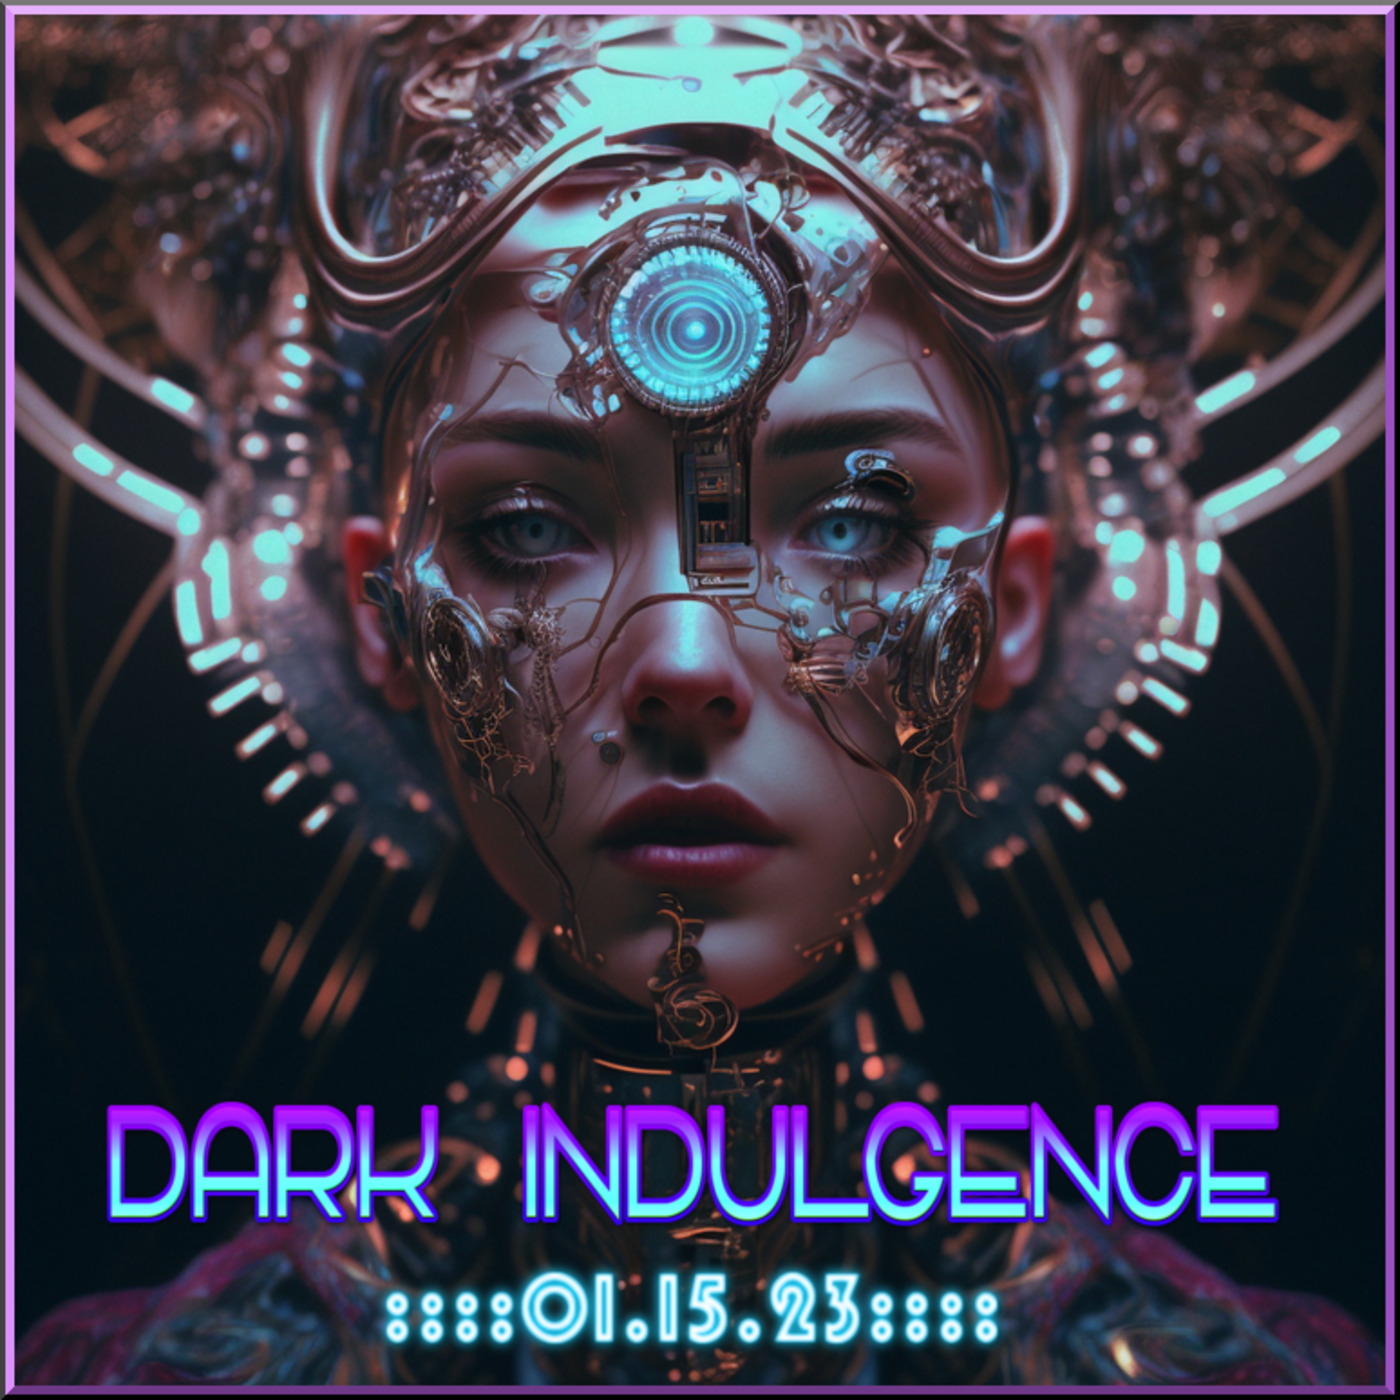 Dark Indulgence 01.15.23 Industrial | EBM | Dark Disco Mixshow by Scott Durand : djscottdurand.com